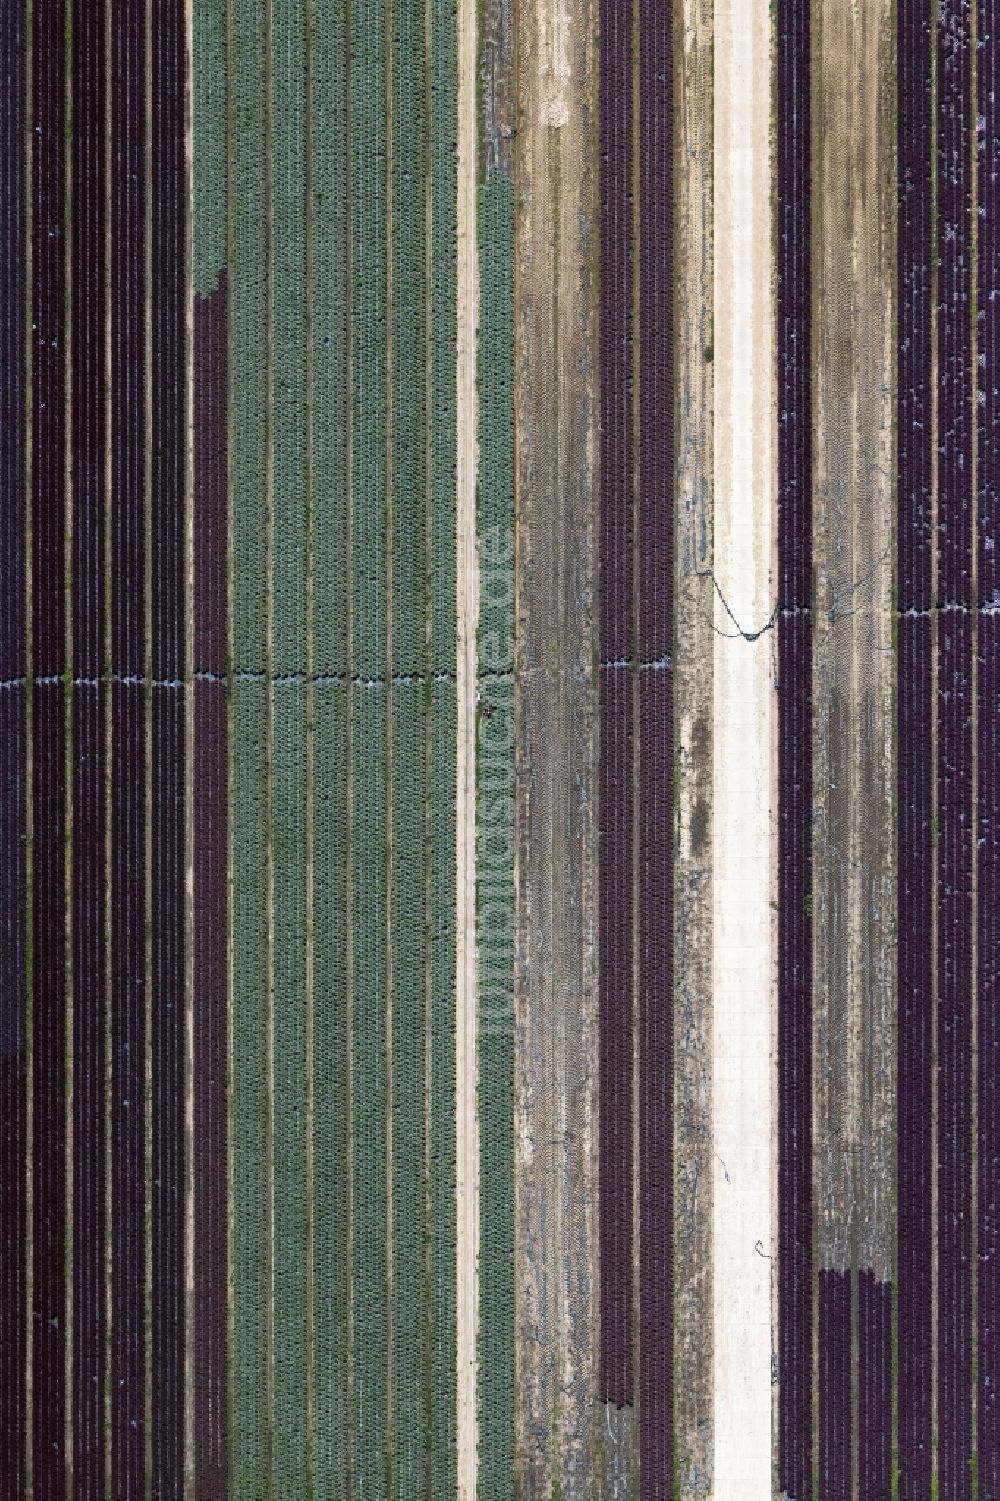 Luftaufnahme Bürstadt - Strukturen auf landwirtschaftlichen Feldern in Bürstadt im Bundesland Hessen, Deutschland